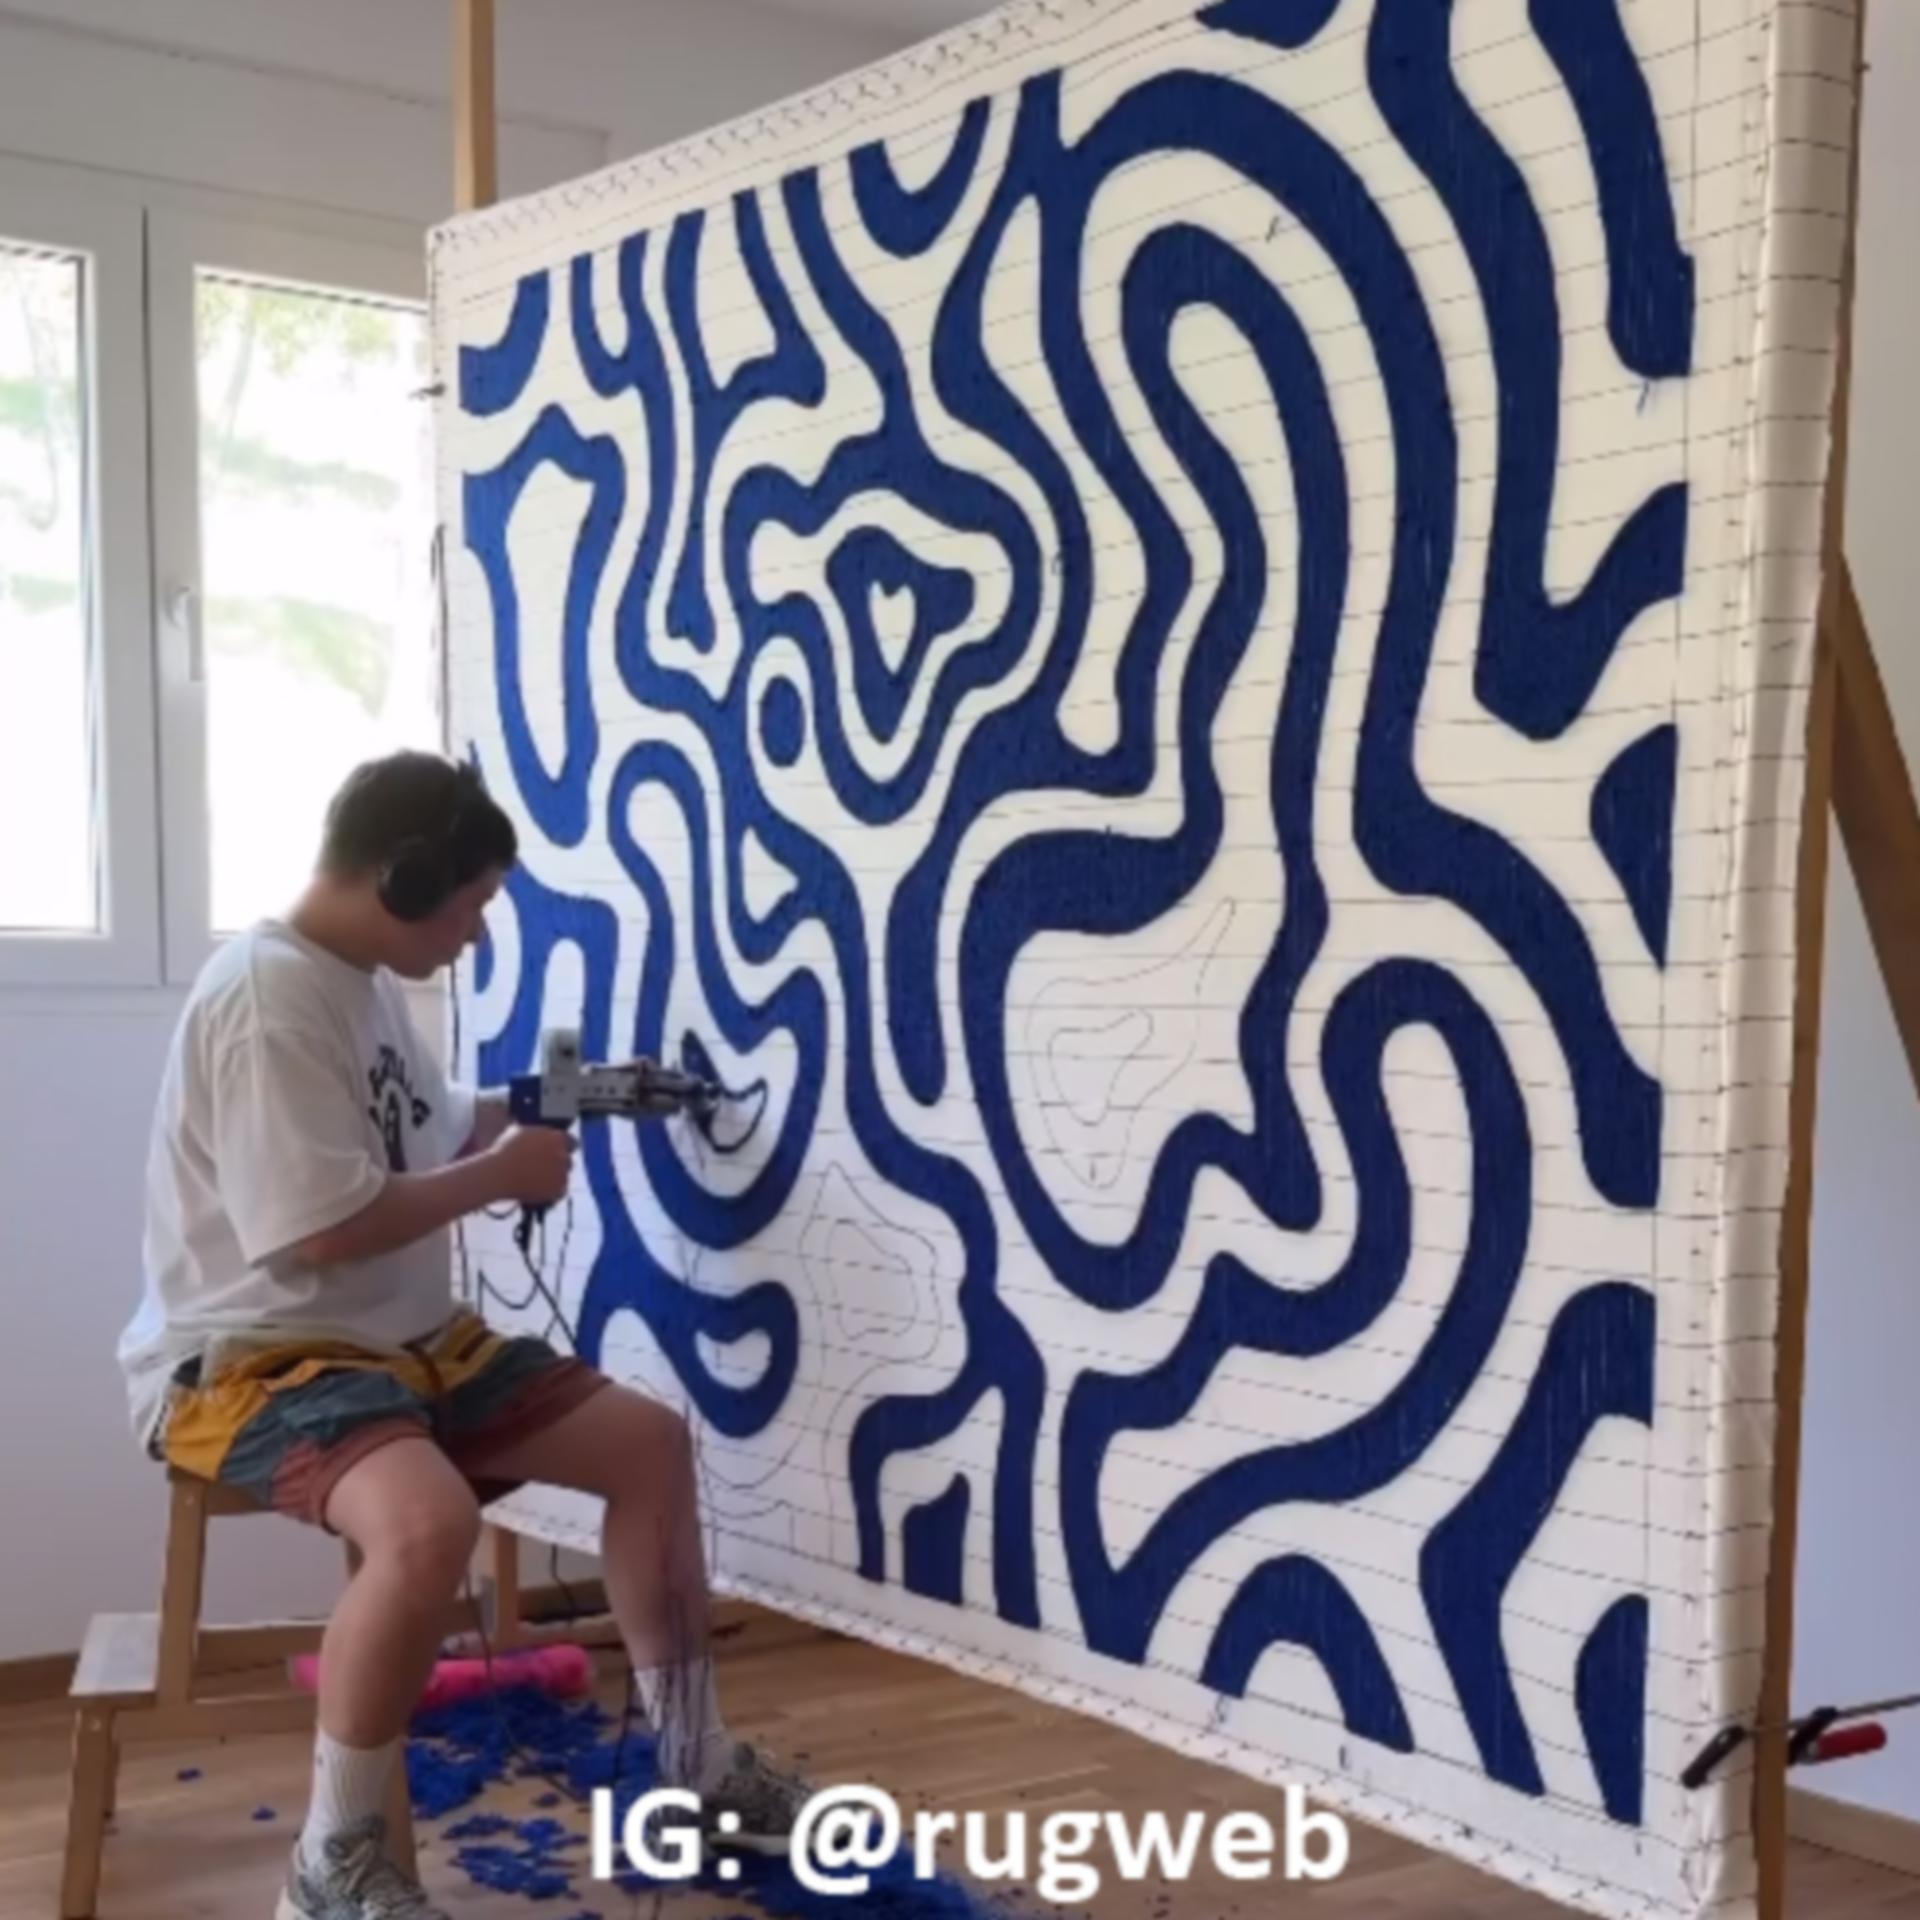 artista del tufting, crea tappeti artistici, in instagram rugweb - Consigliati d iido, Roma